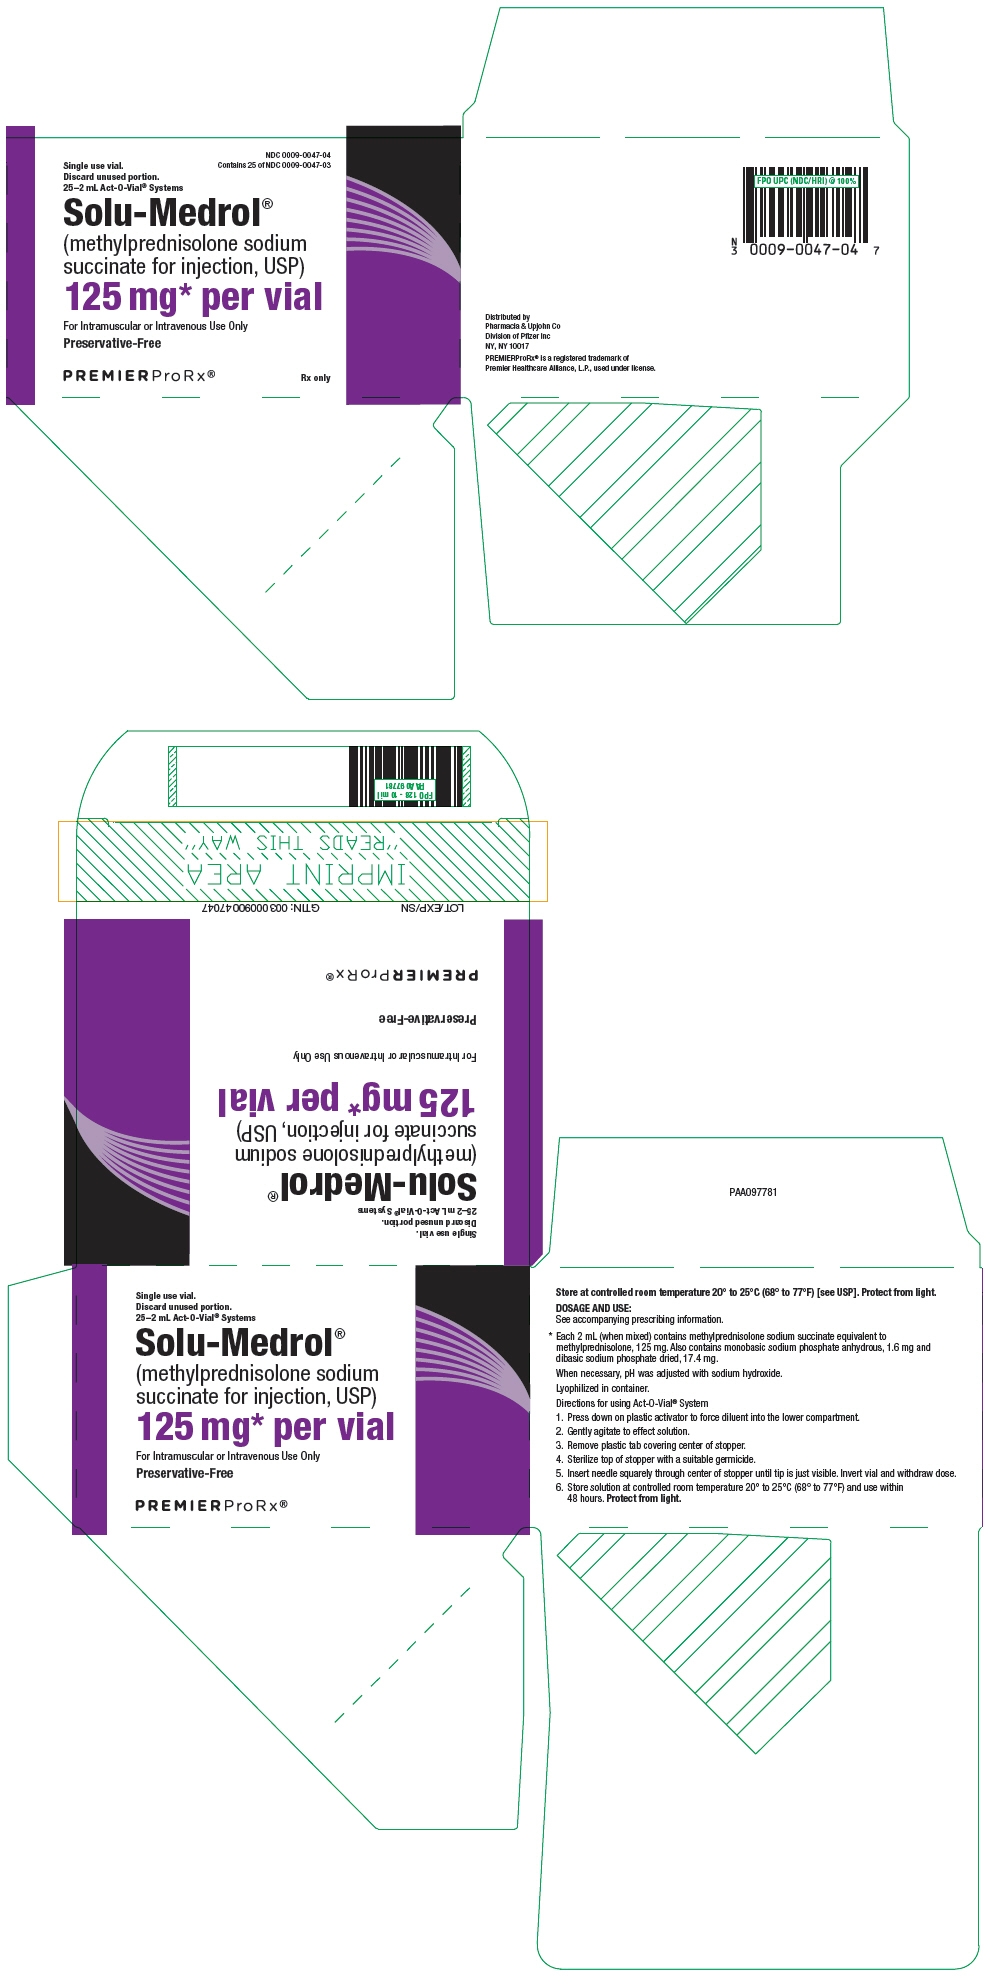 PRINCIPAL DISPLAY PANEL - 125 mg Vial Carton